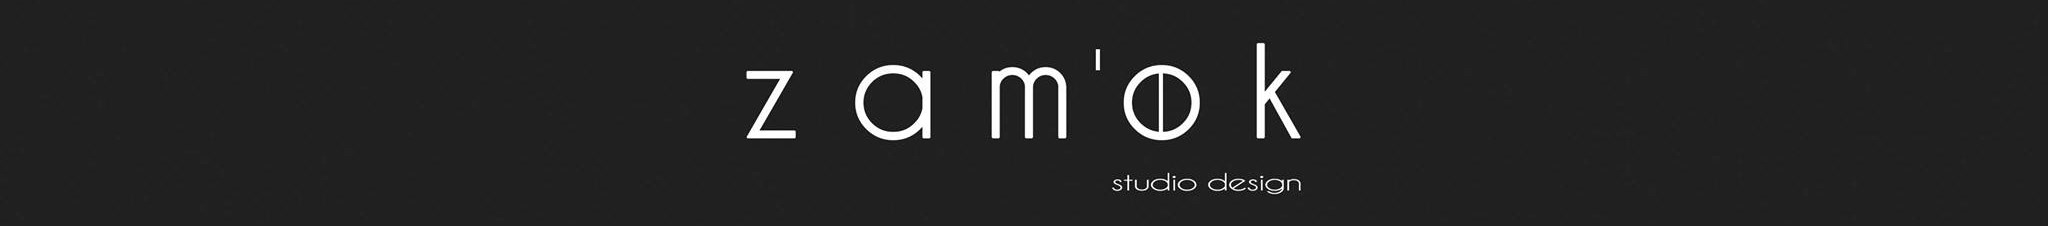 ZAM'OK studio design's profile banner